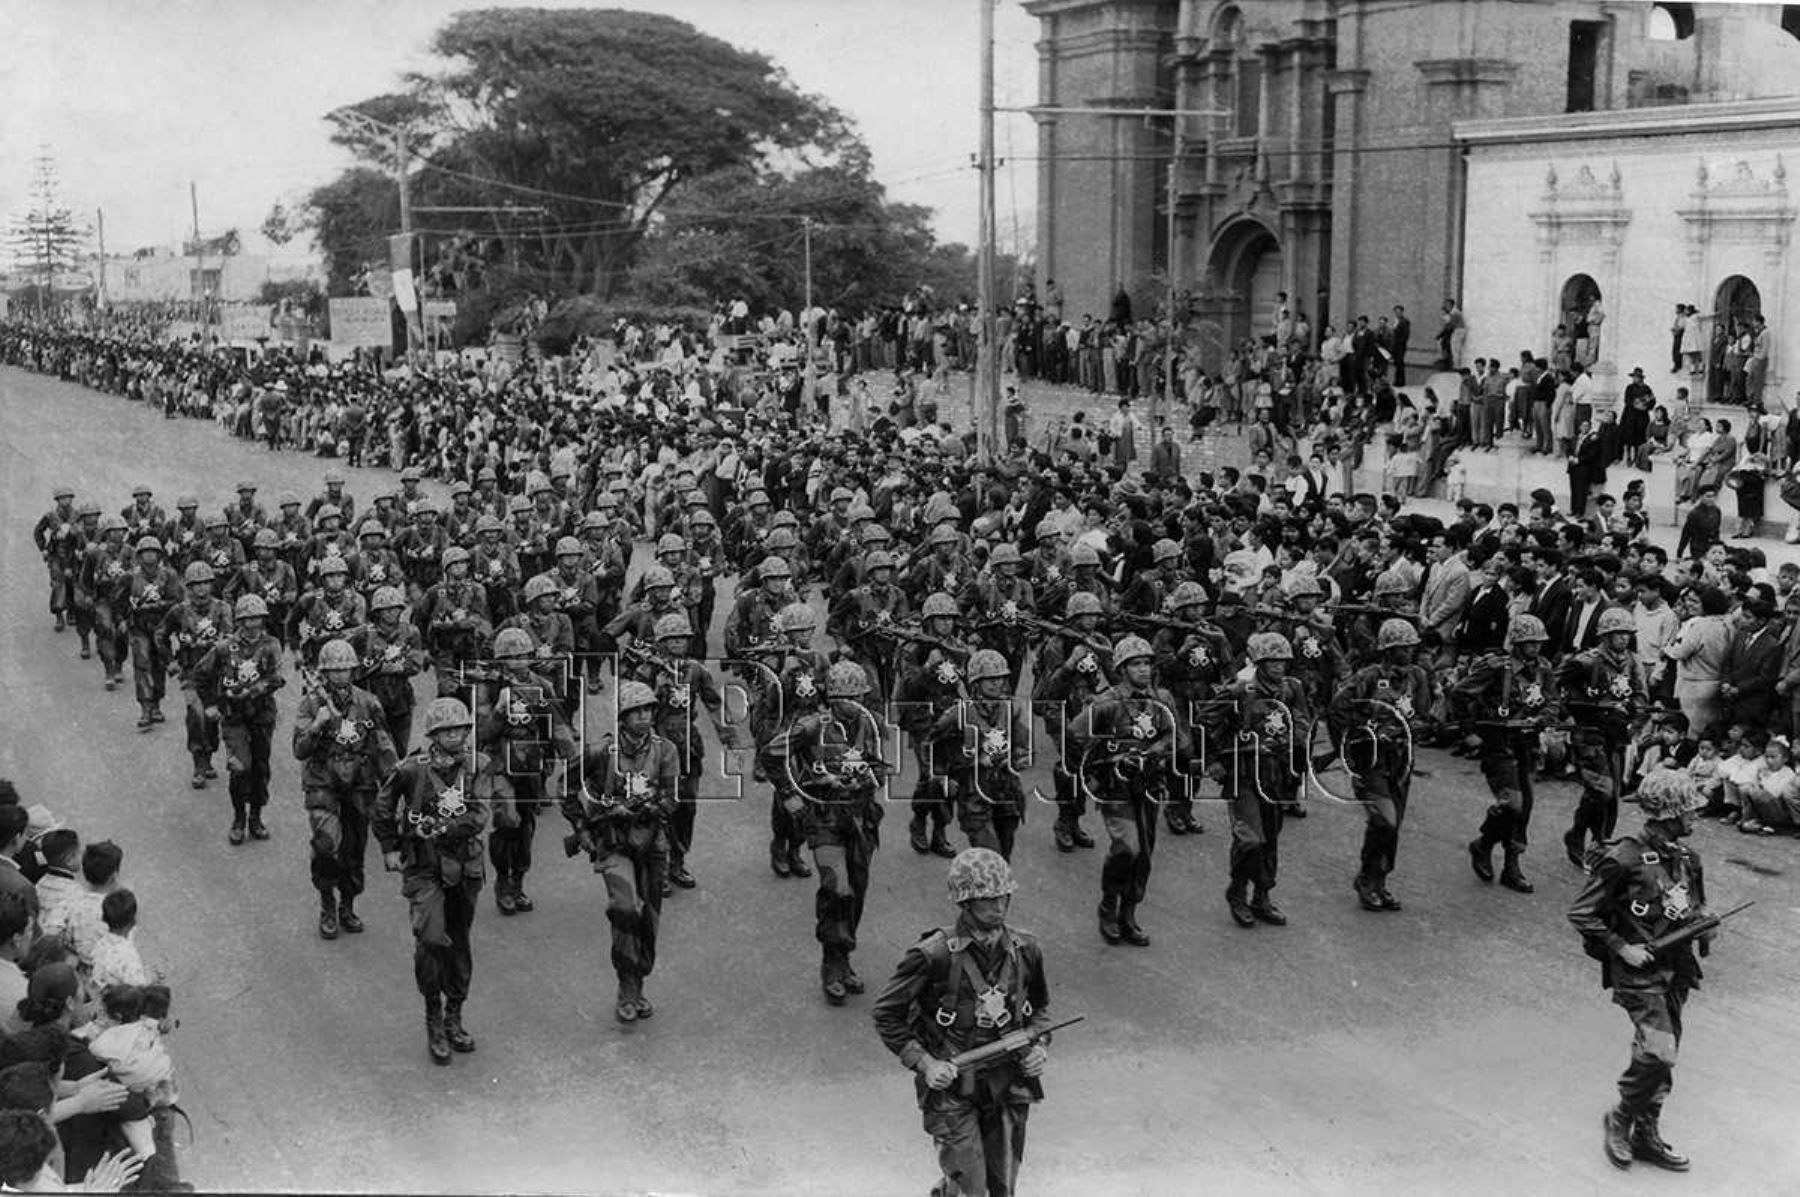 Parada Militar en el Campo de Marte - 1960